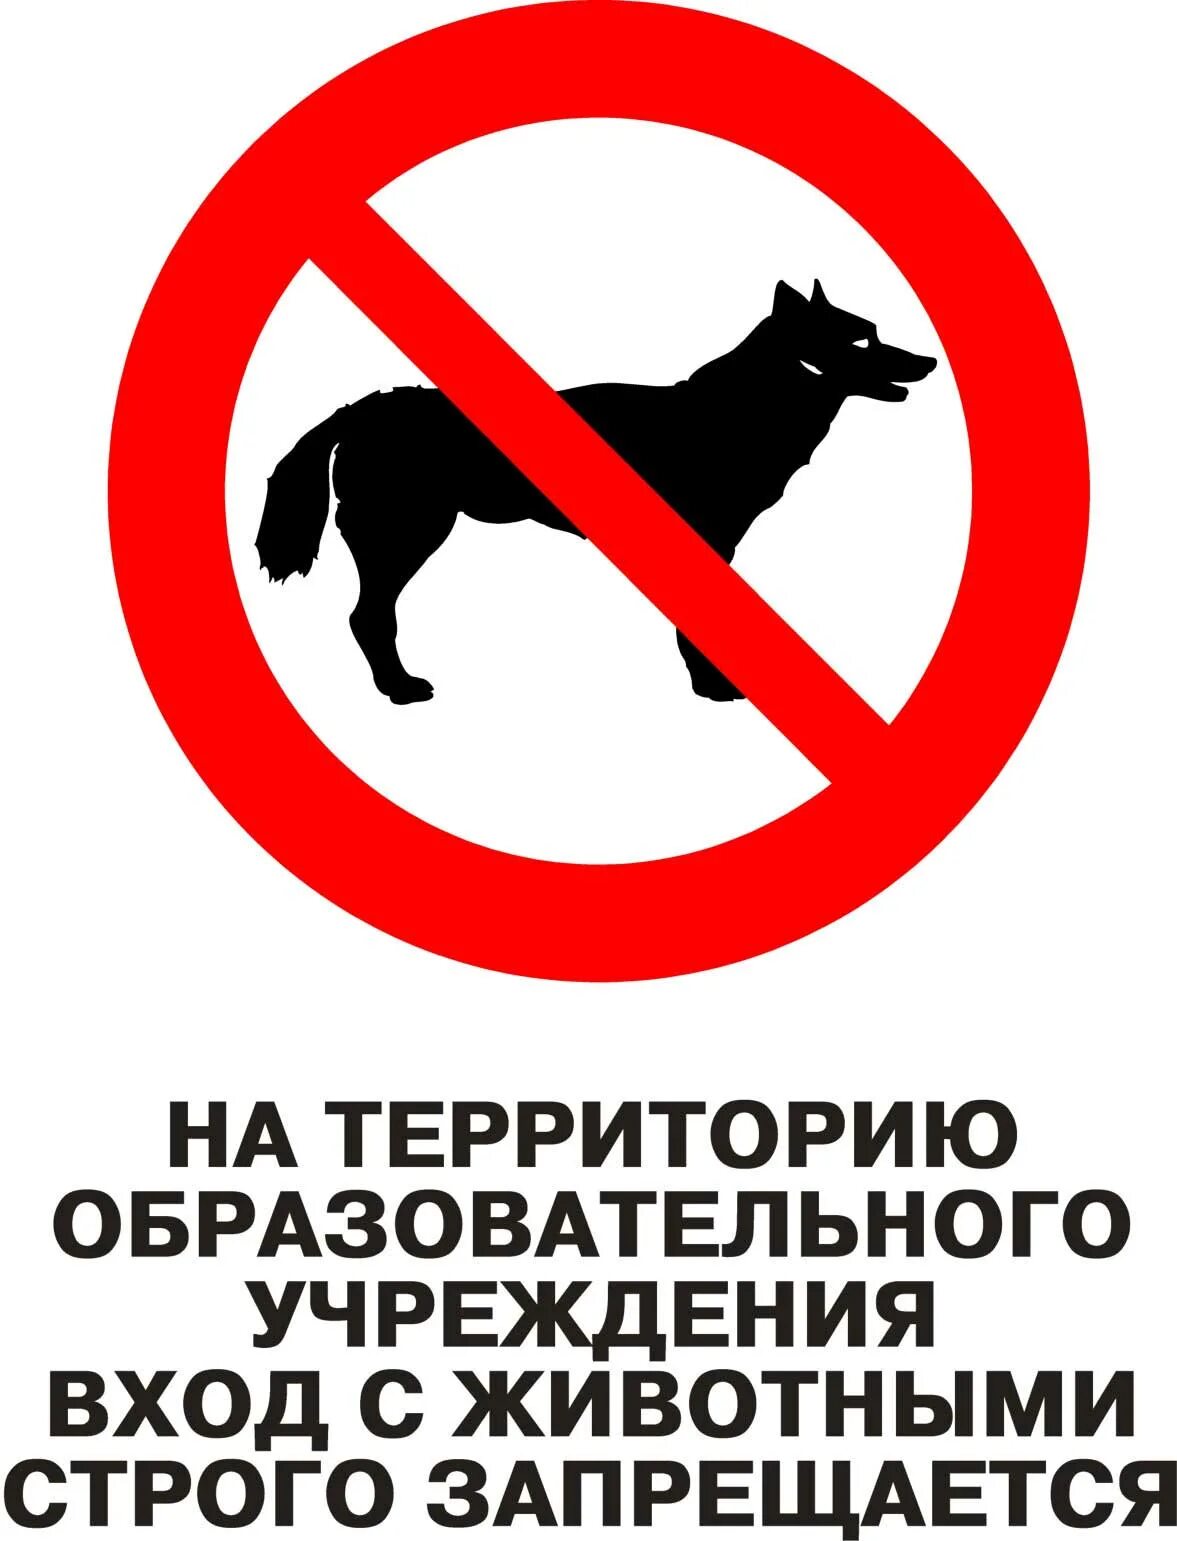 Вход с собаками запрещен. Вход с санками запрещен. Выгул собак запрещен. Вход на территорию школы с собаками запрещен. Магазин вход запрещен